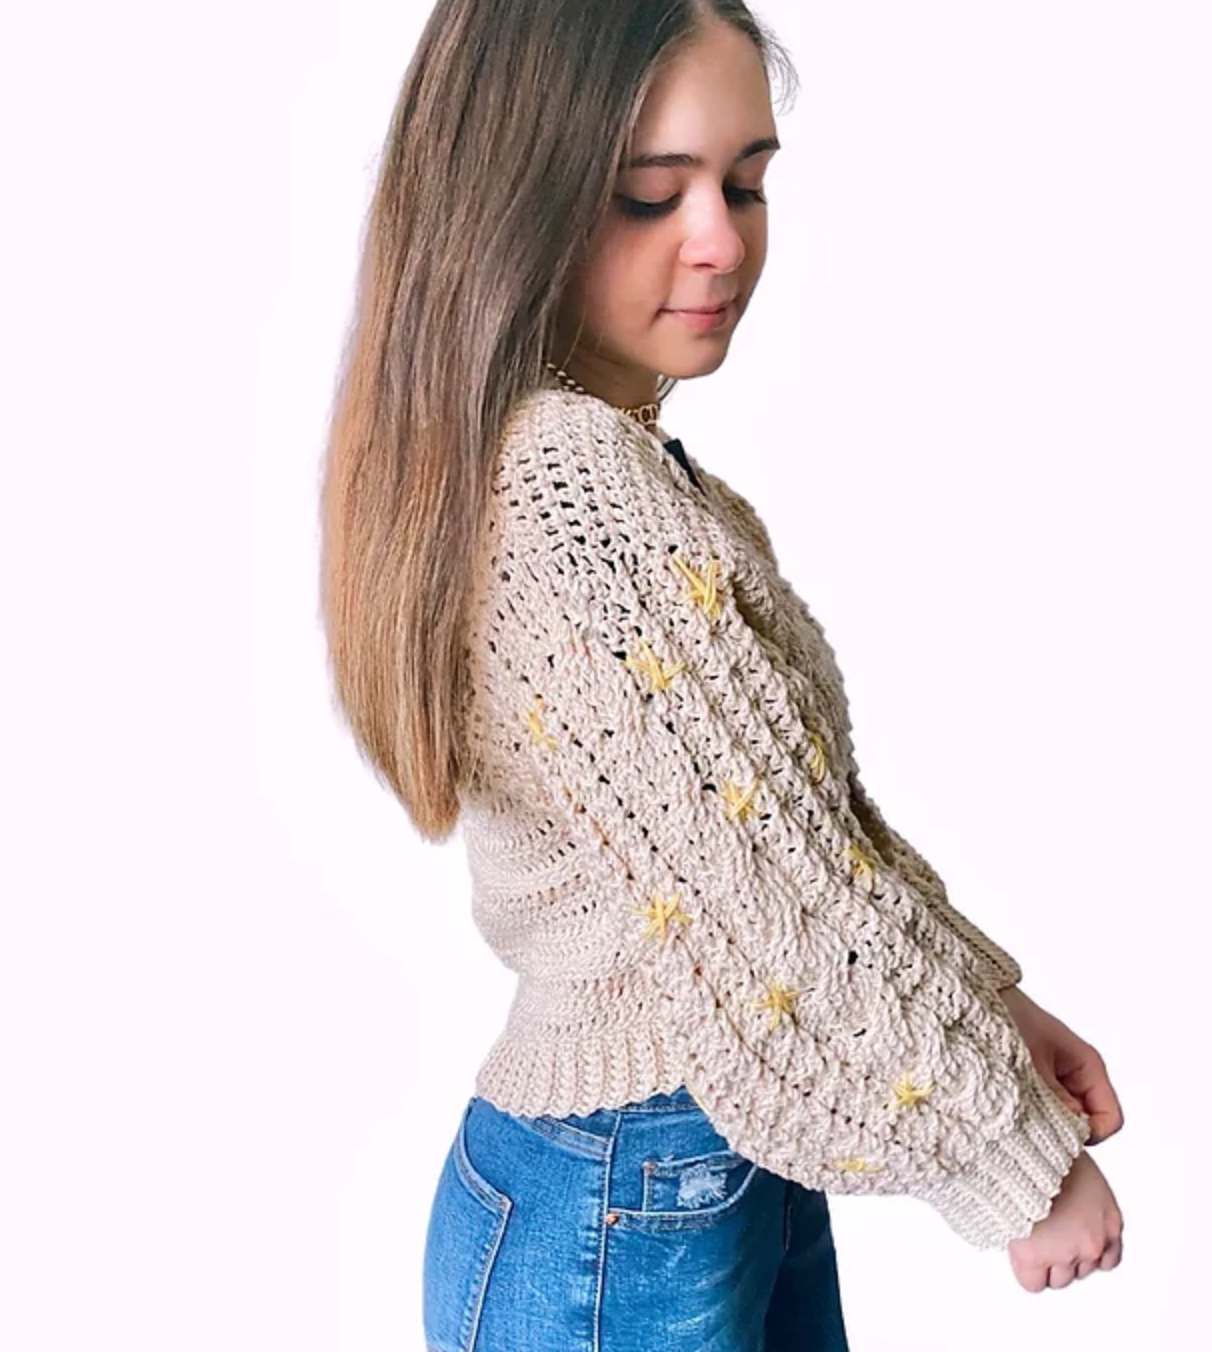 Malmo Sweater Crochet Pattern